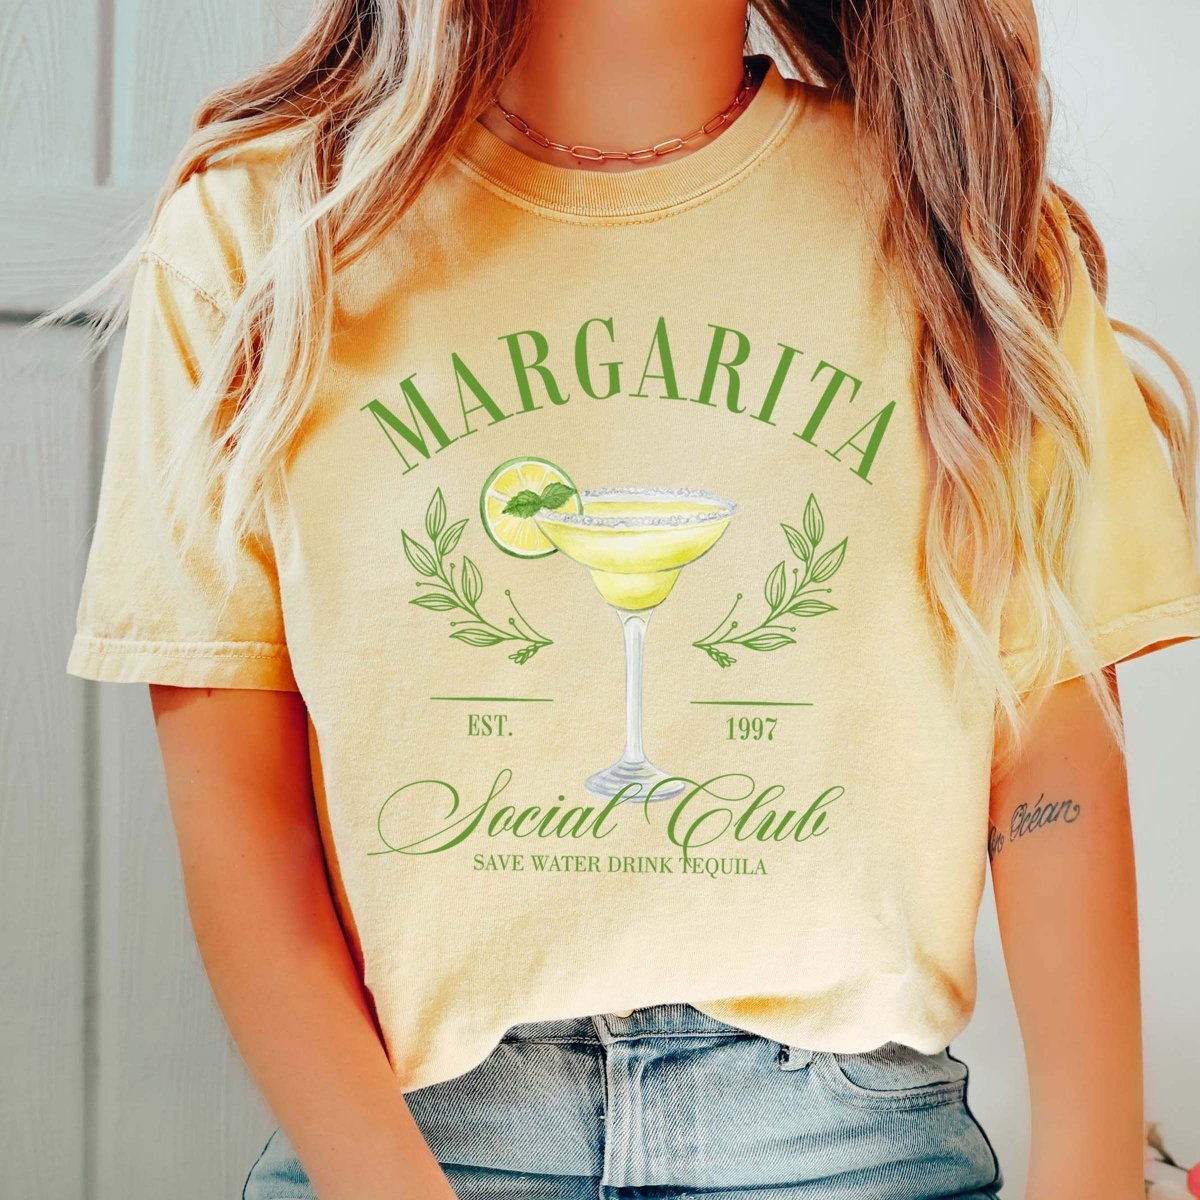 Margarita Social Club Tee - Limeberry Designs